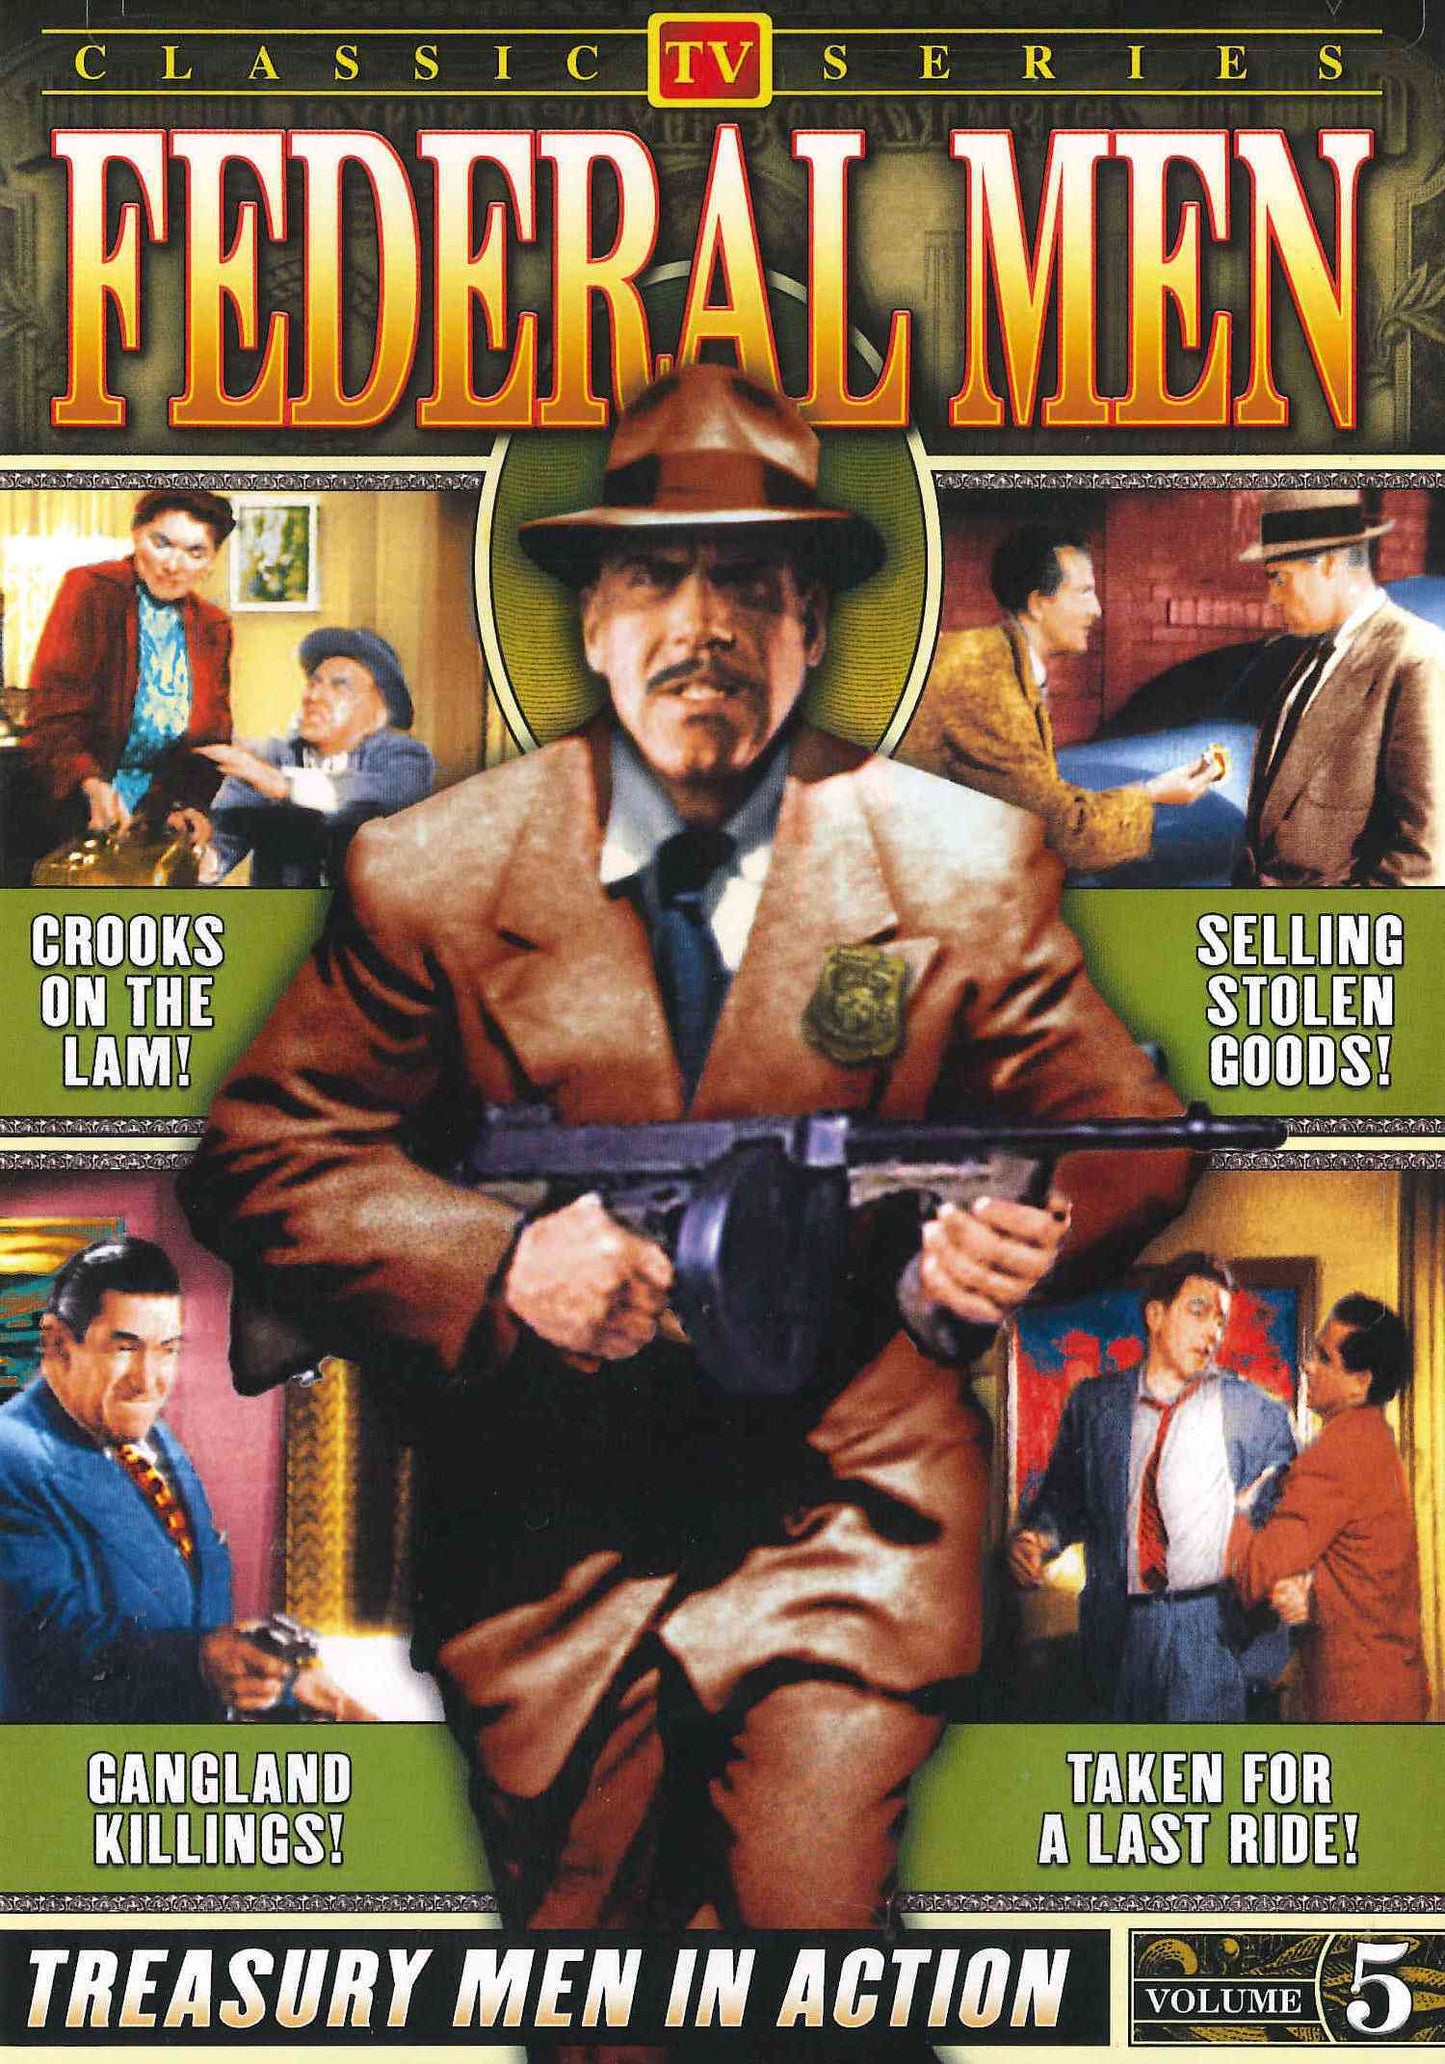 Federal Men - Vol. 5 cover art